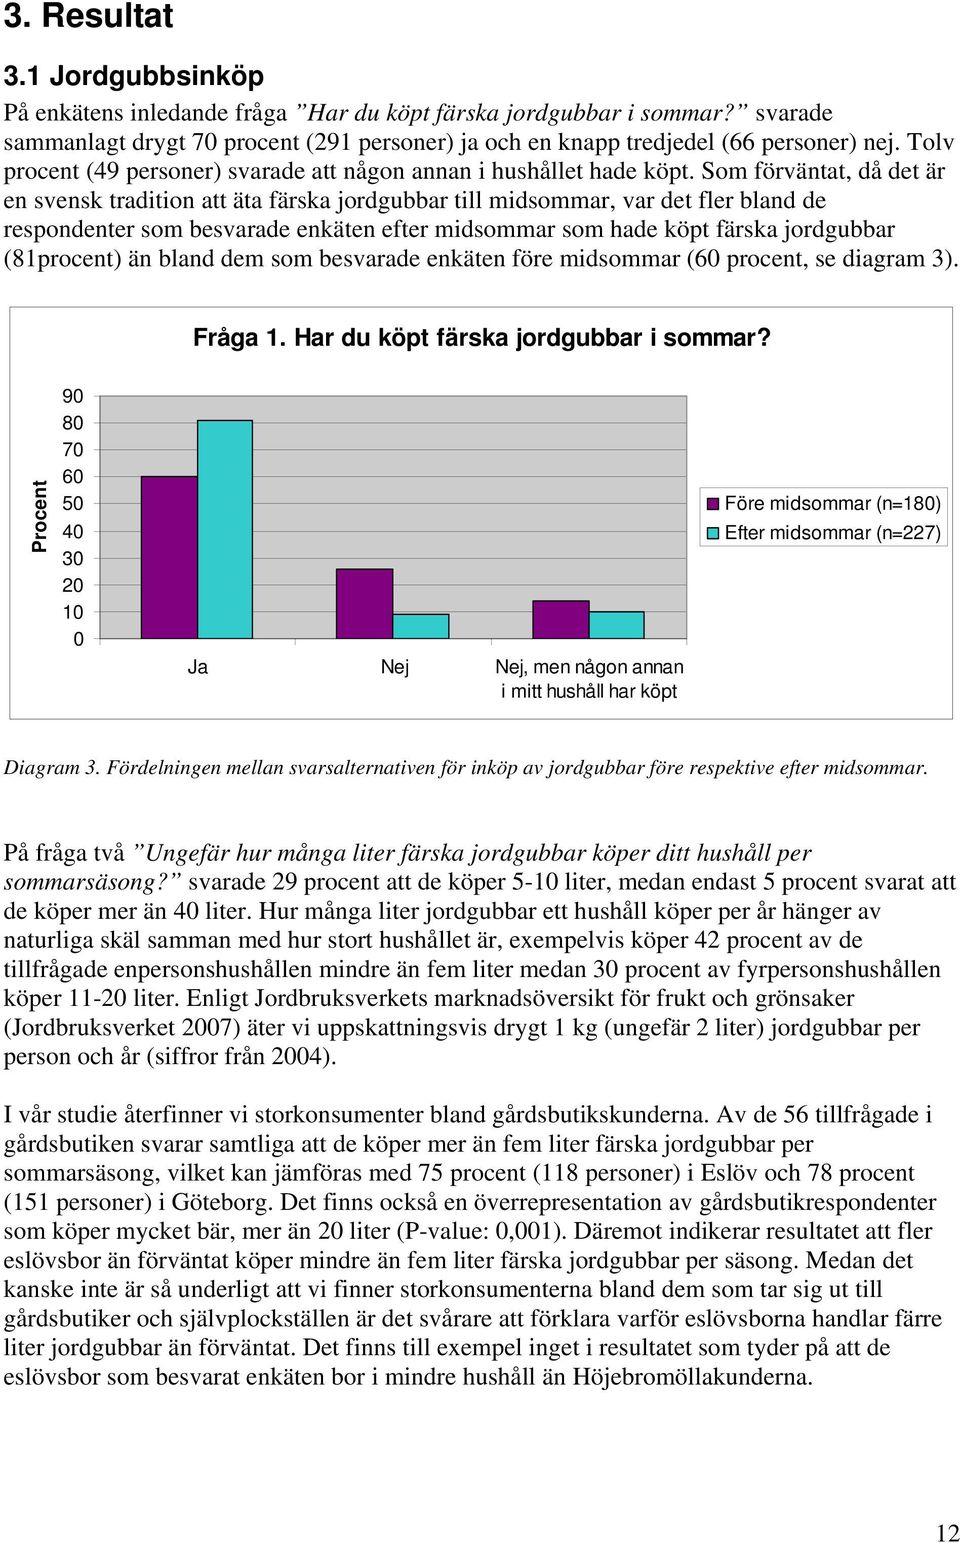 Som förväntat, då det är en svensk tradition att äta färska jordgubbar till midsommar, var det fler bland de respondenter som besvarade enkäten efter midsommar som hade köpt färska jordgubbar